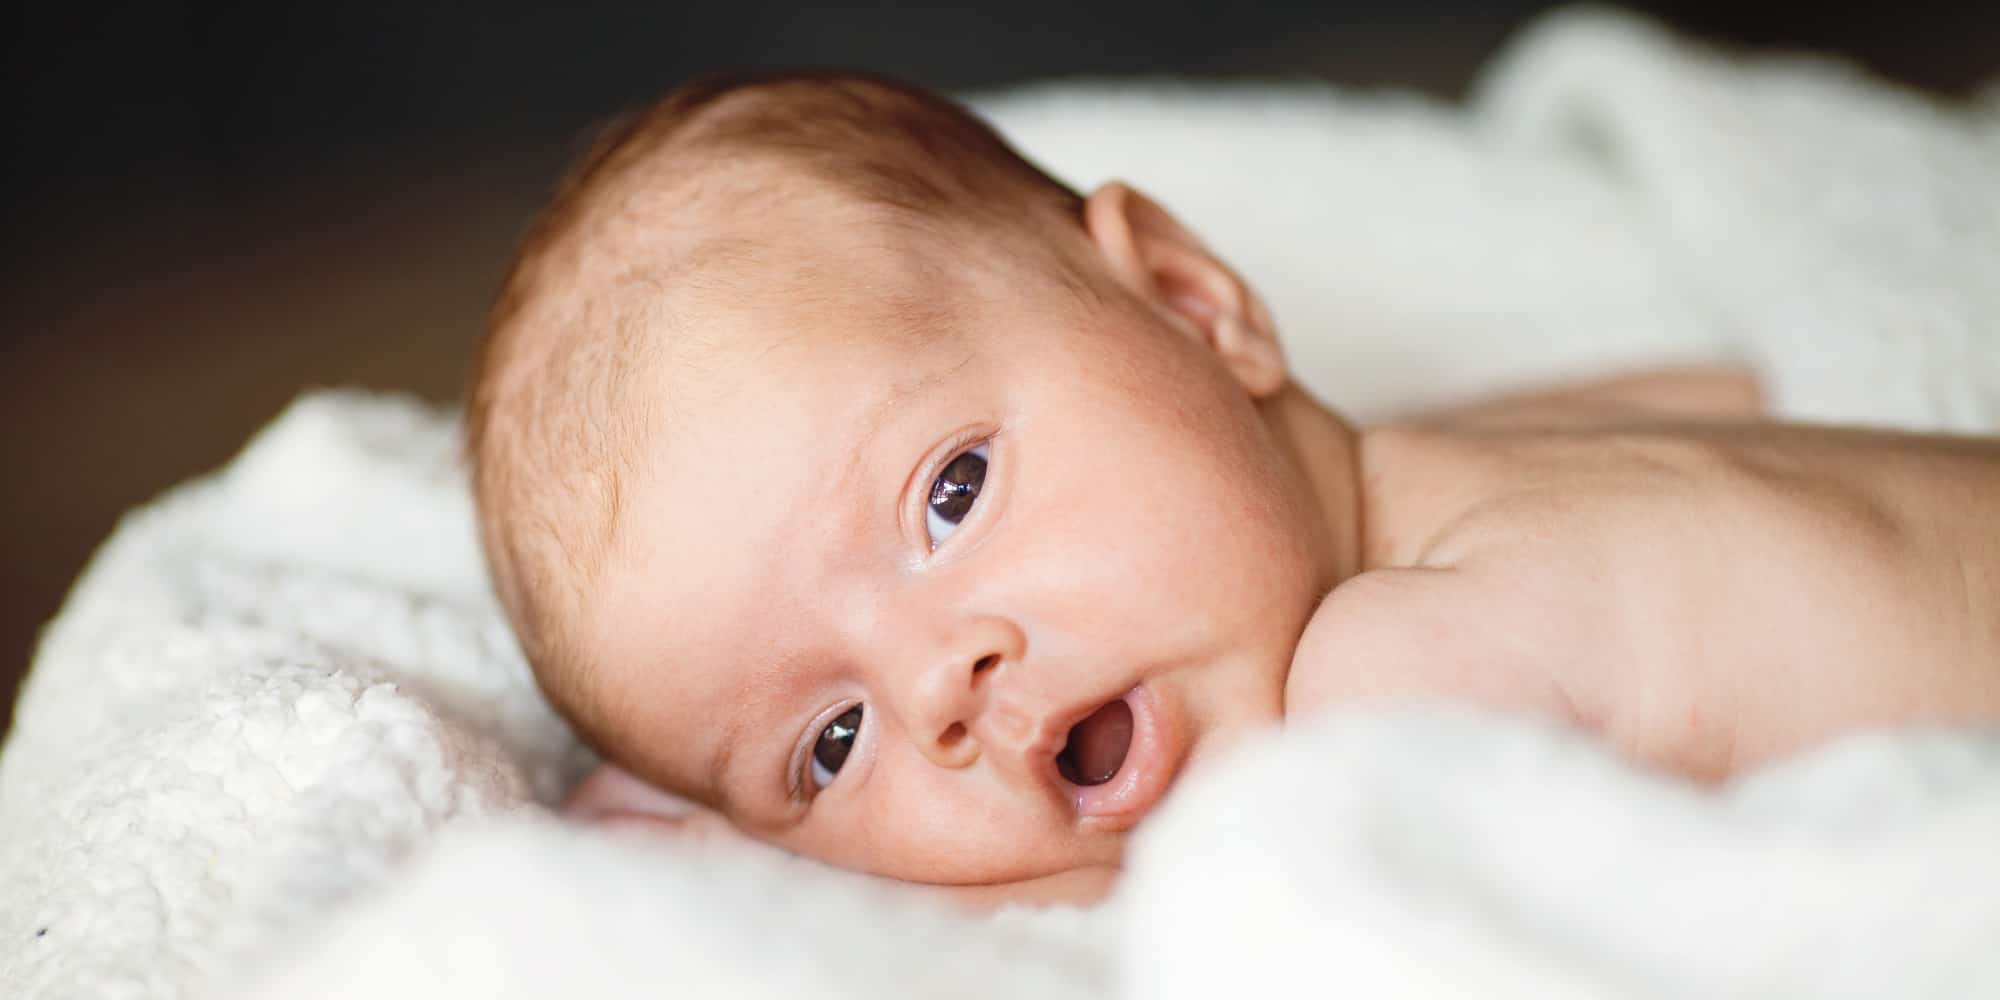  حلم الطفل الرضيع - تفسير الاحلام